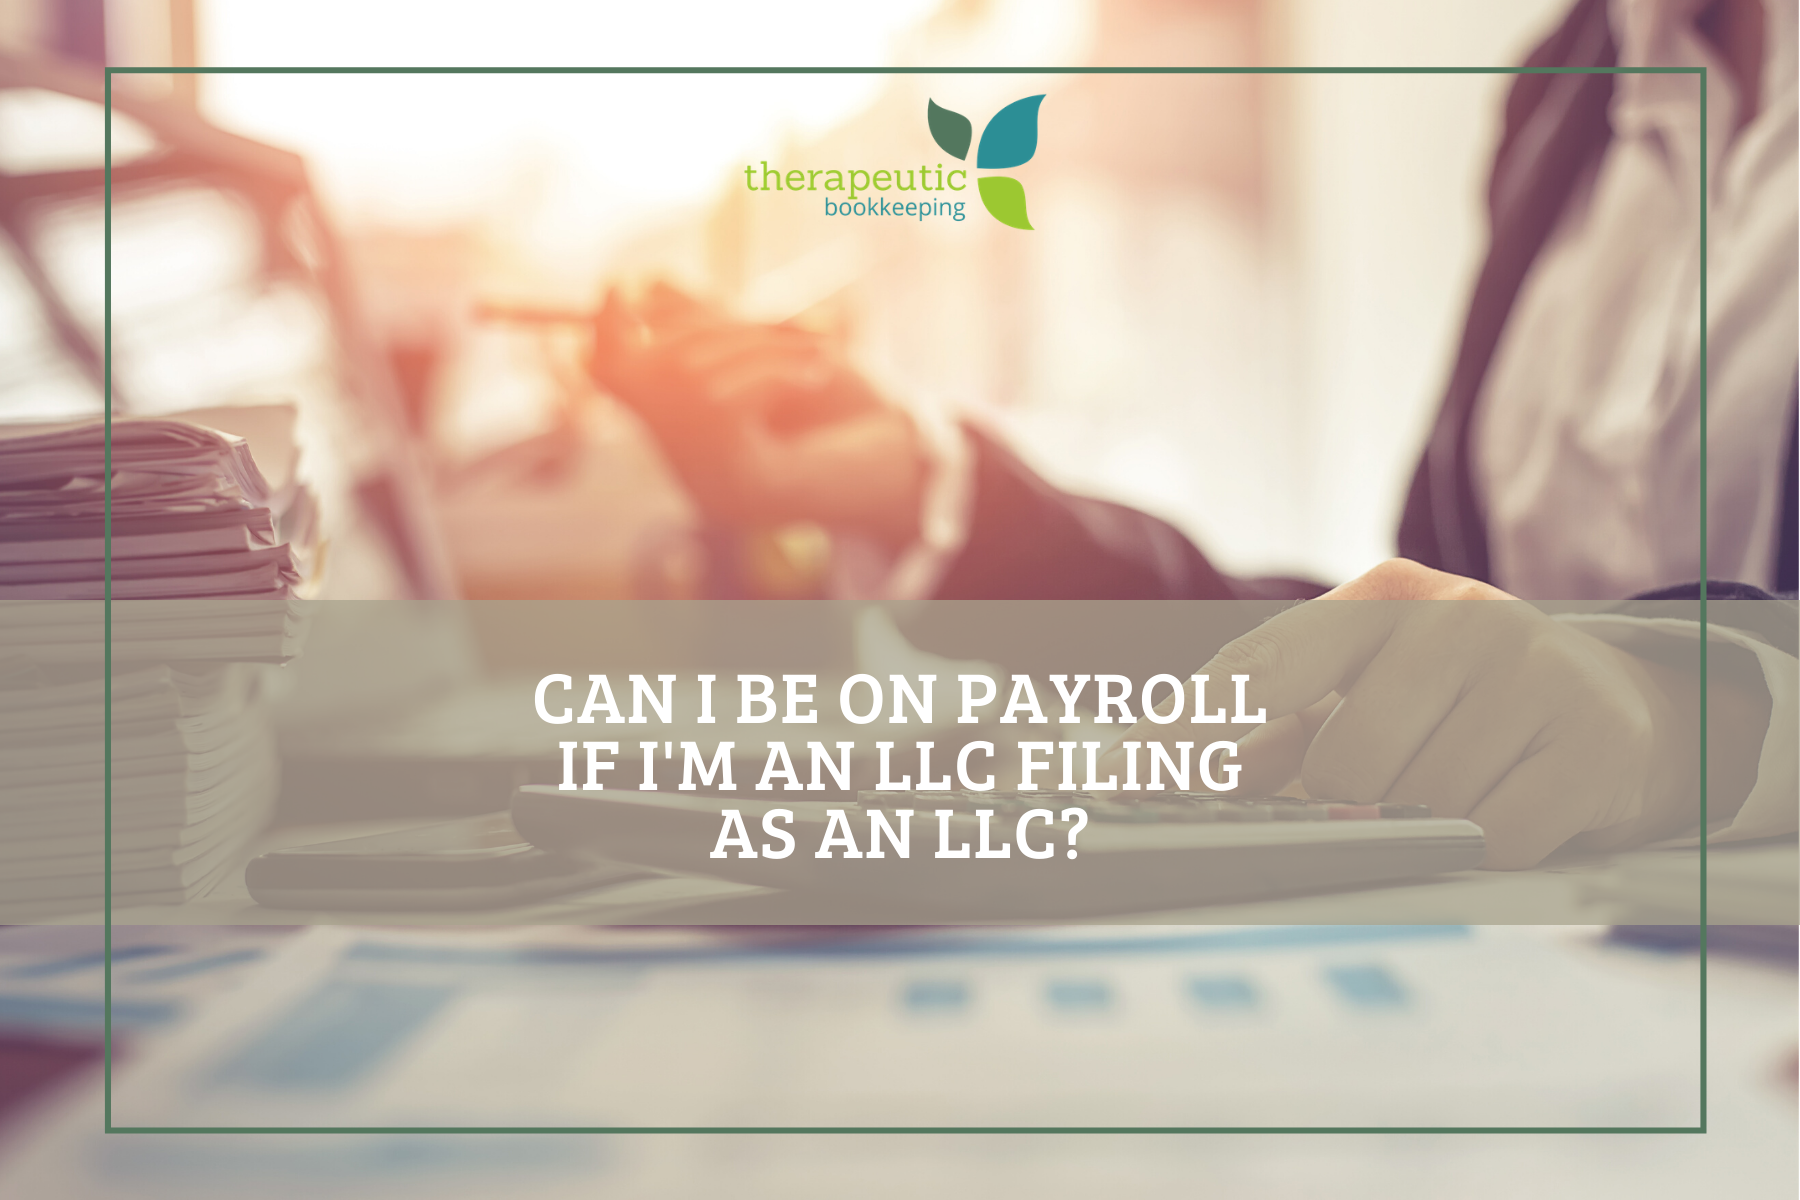 Can I be on payroll if I’m an LLC filing as an LLC?